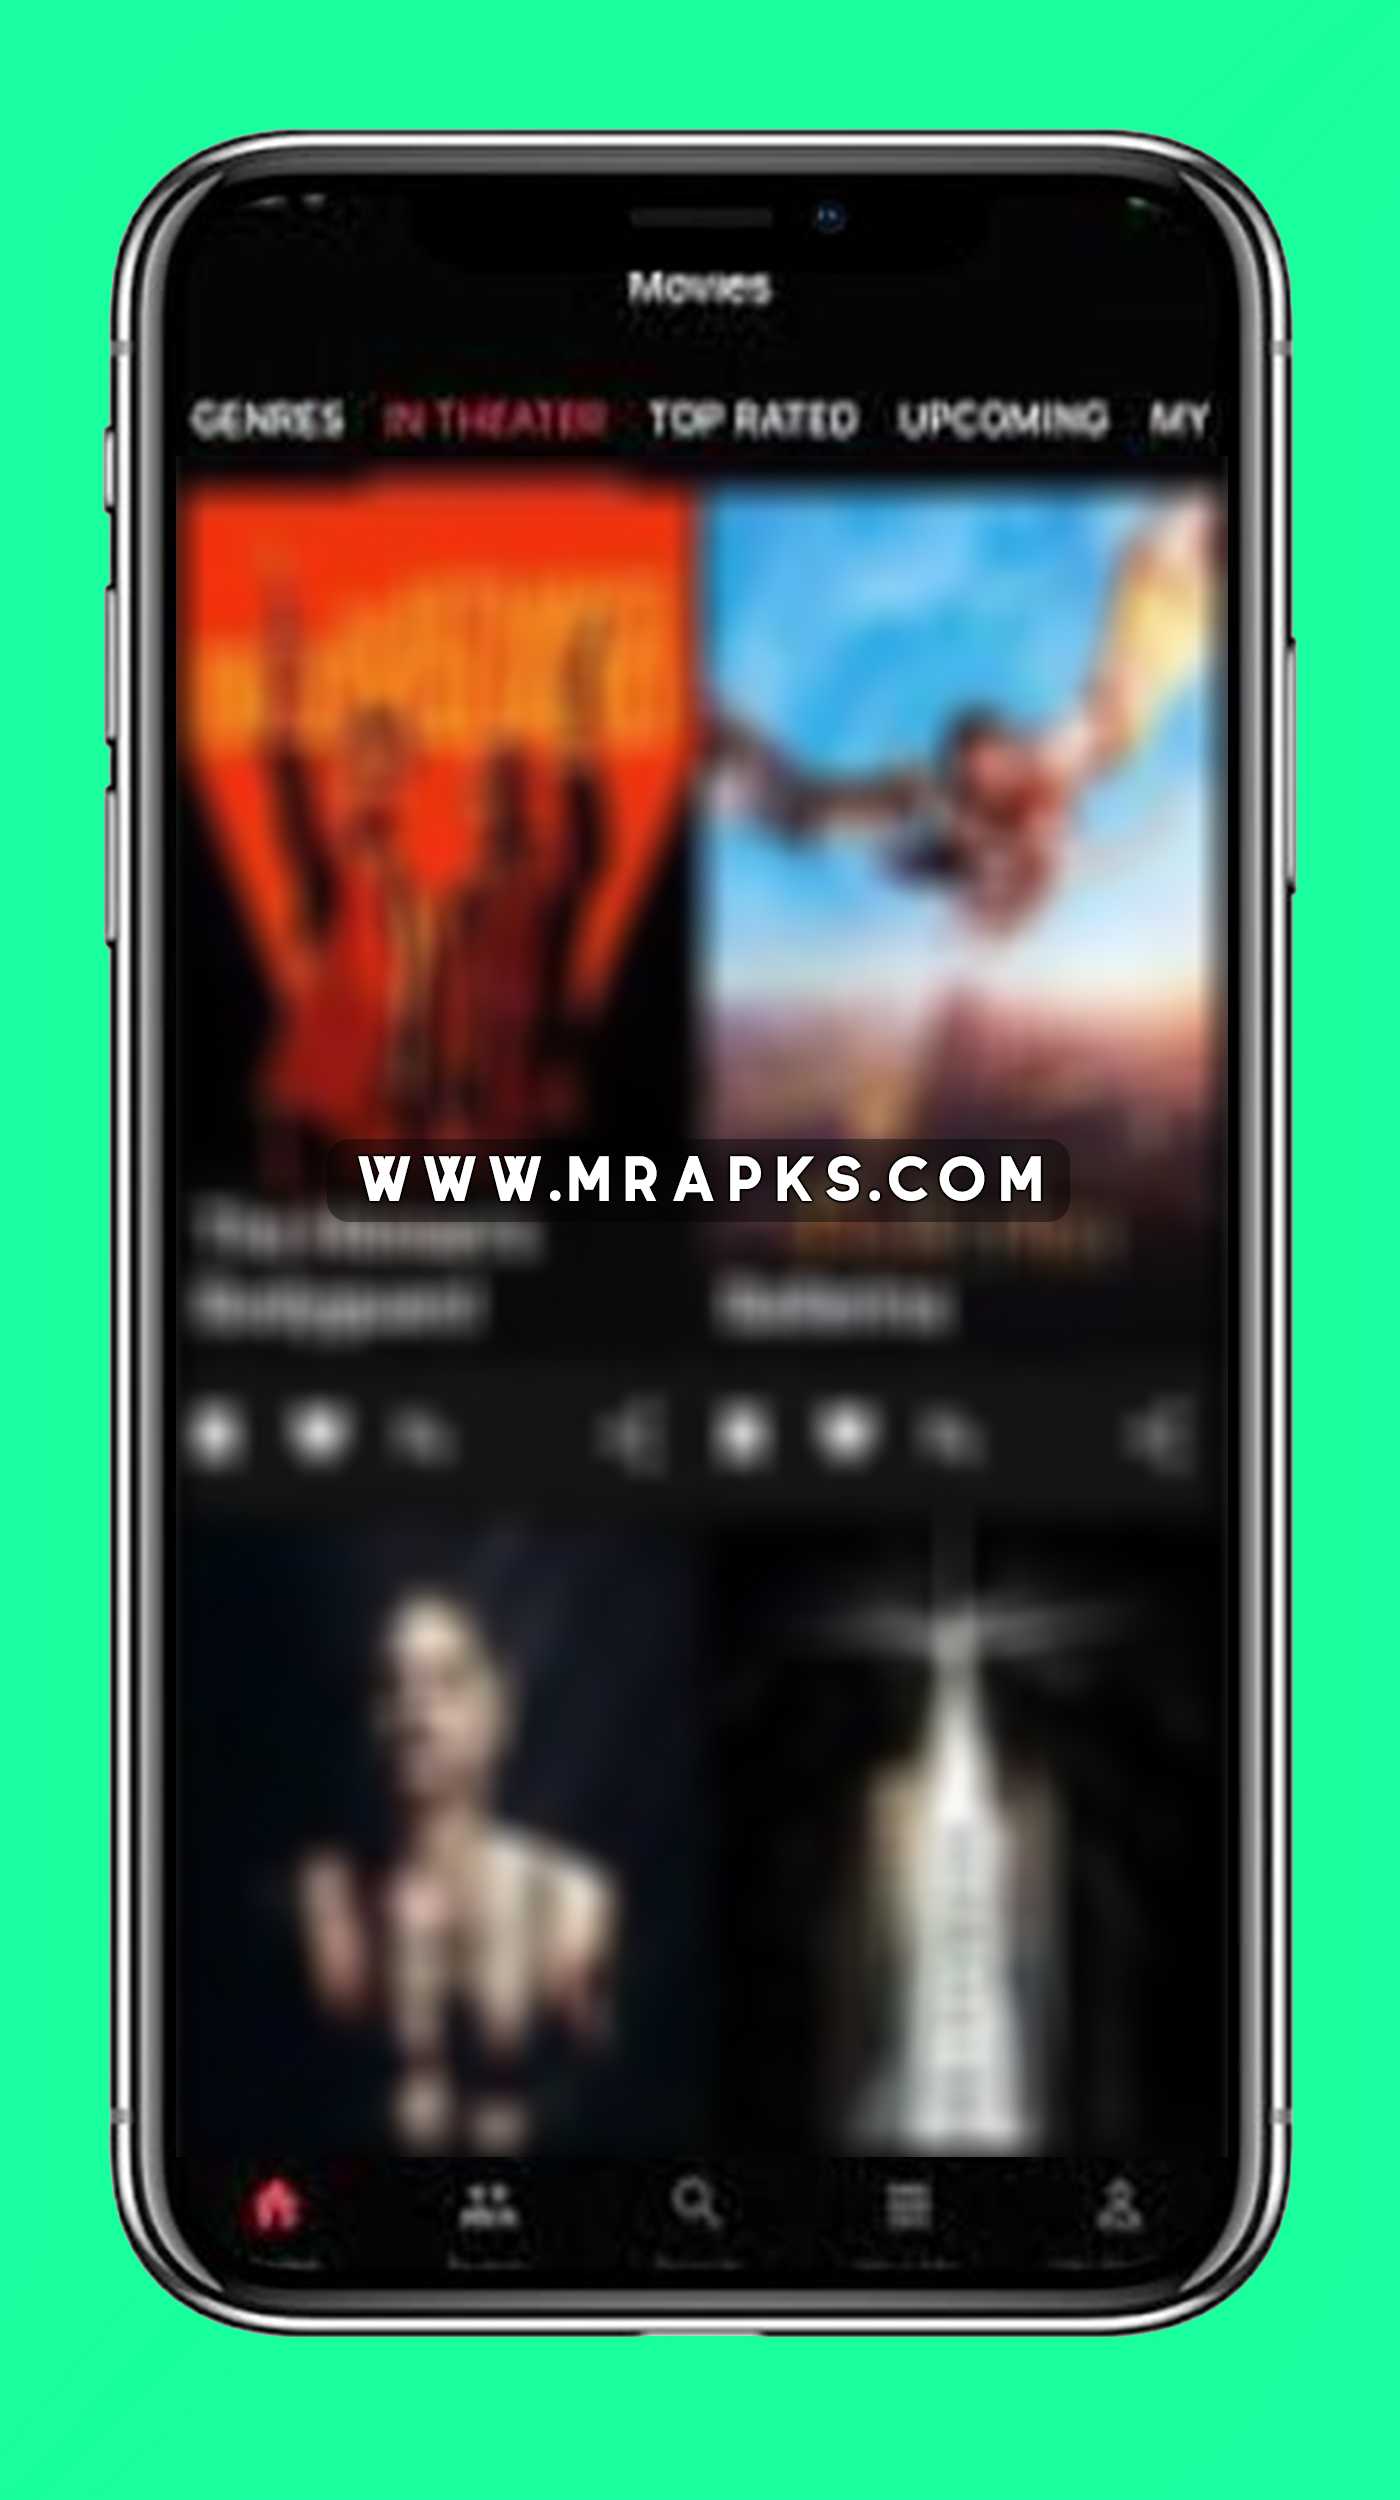 MoviesFire v11.0 (Ad-Free) APK